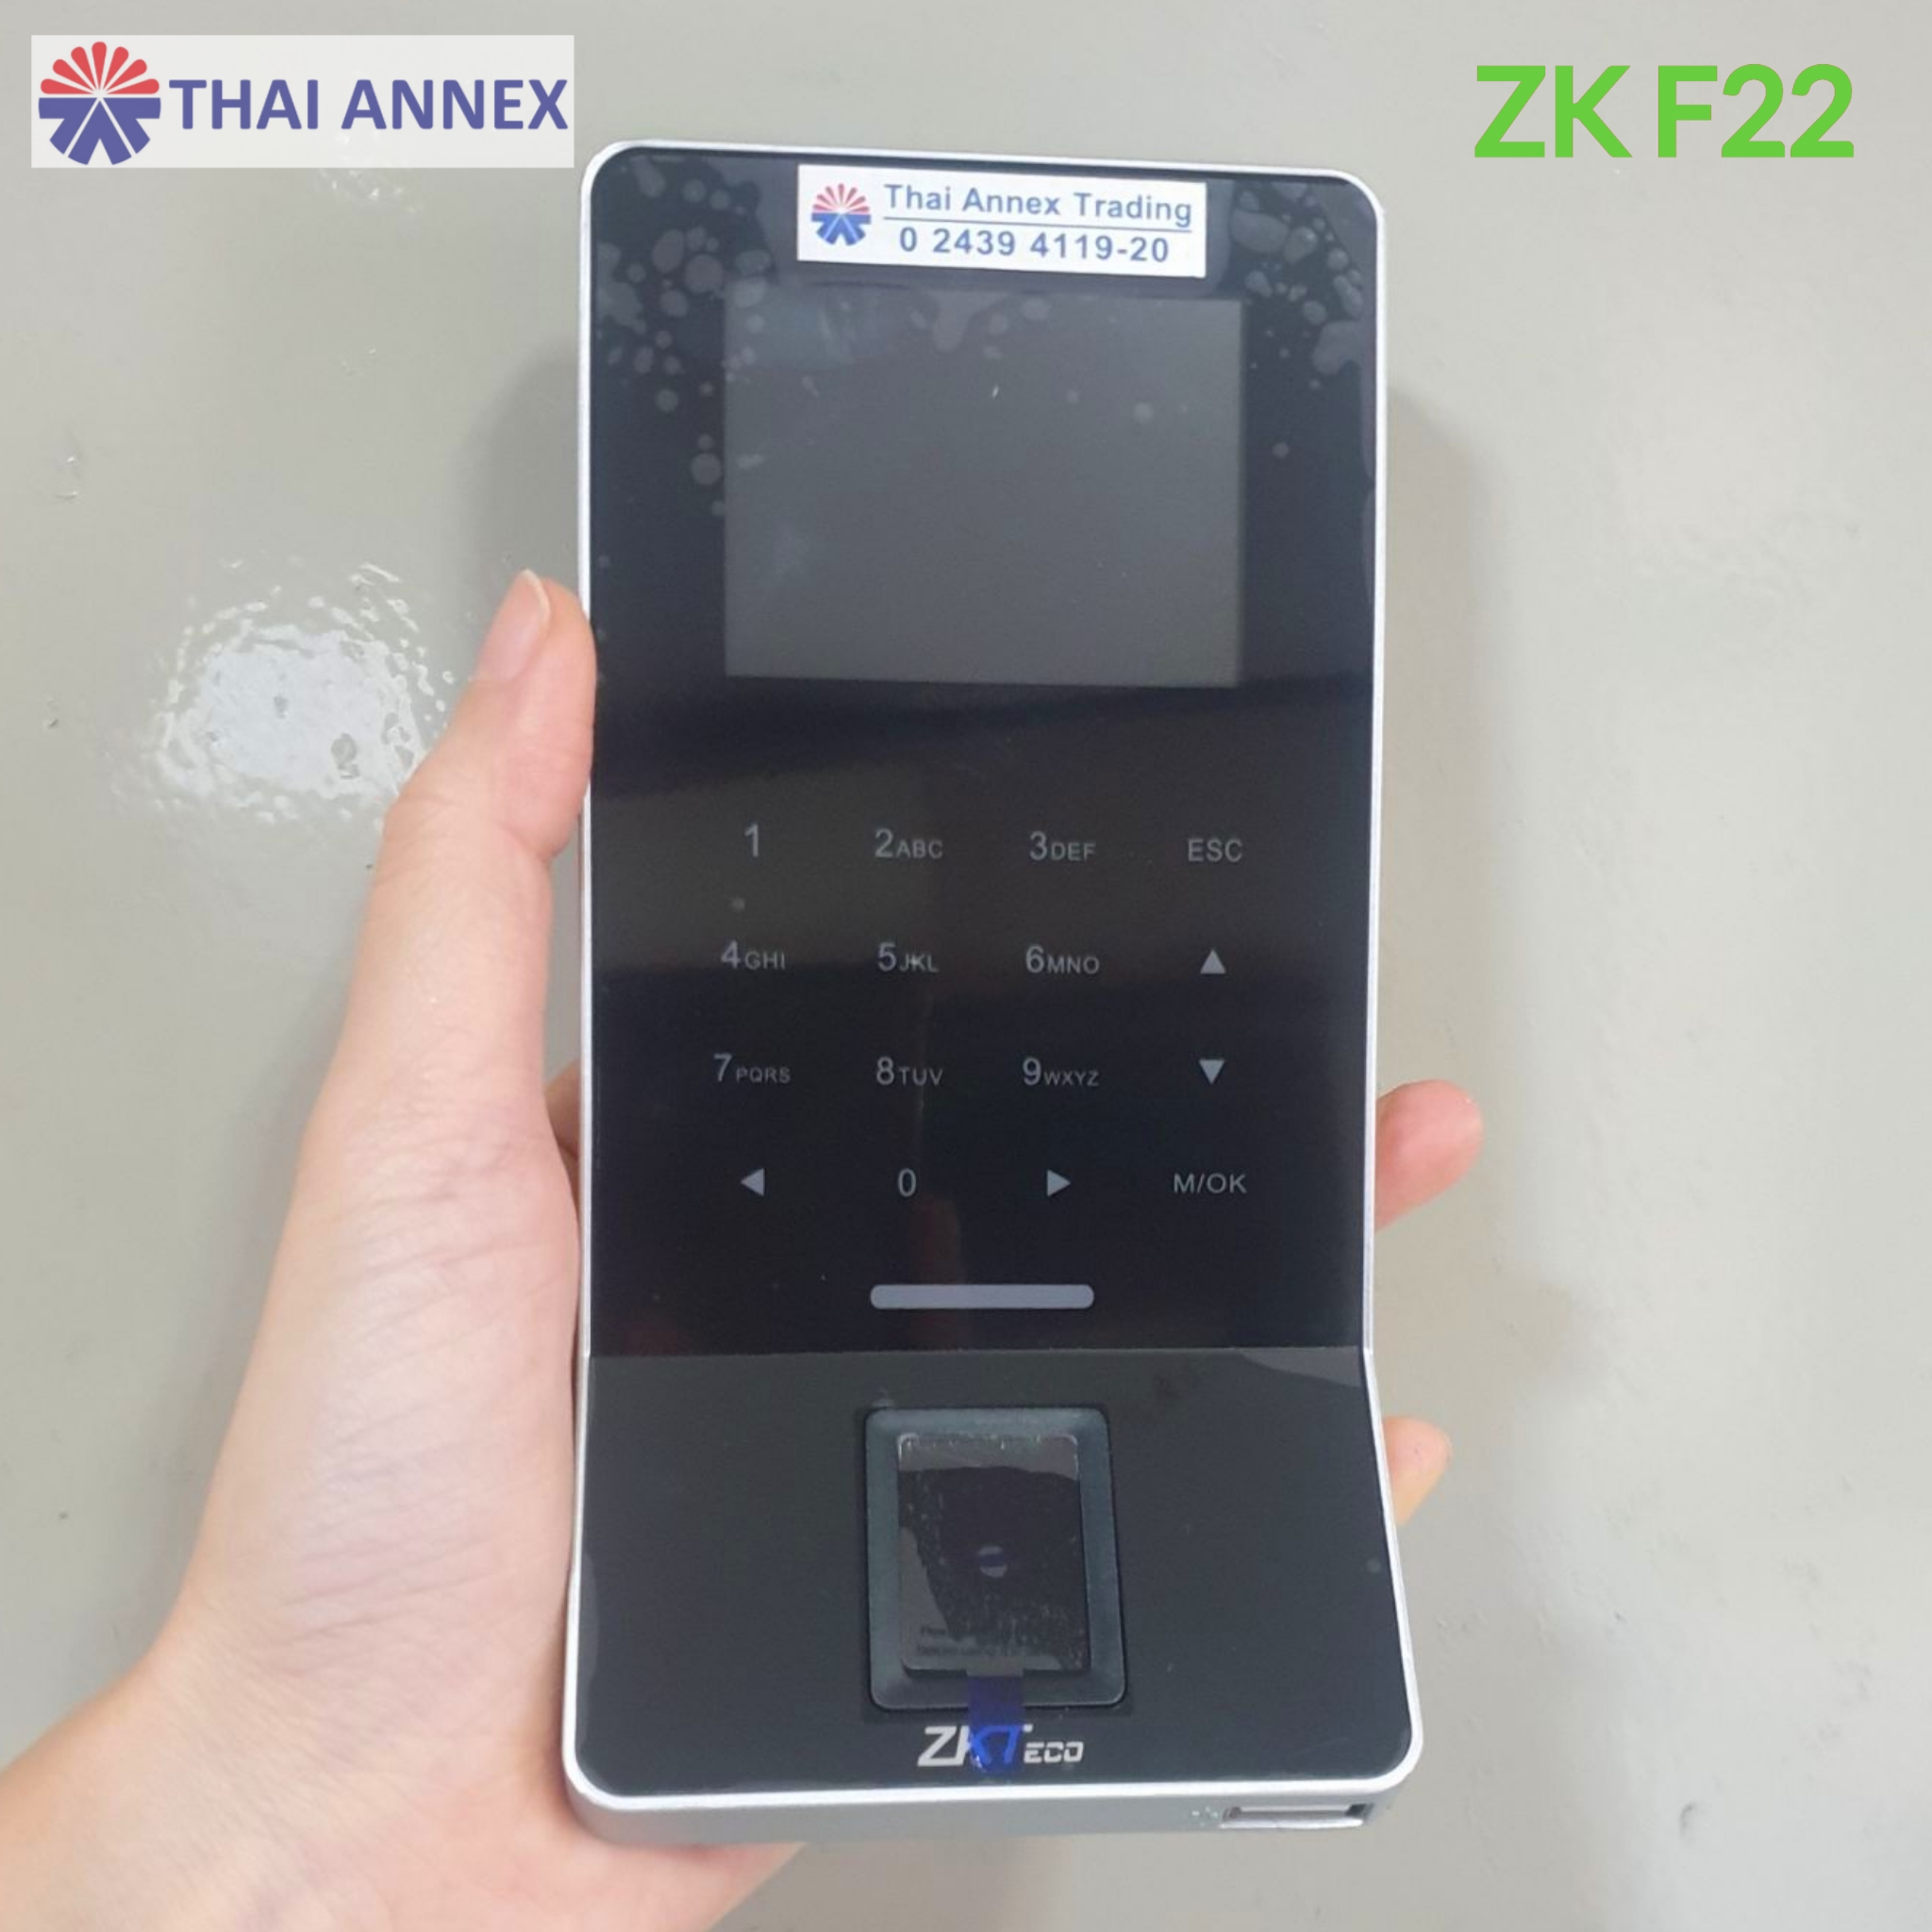 เครื่องสแกนลายนิ้วมือ ZK F22 (Access Control)